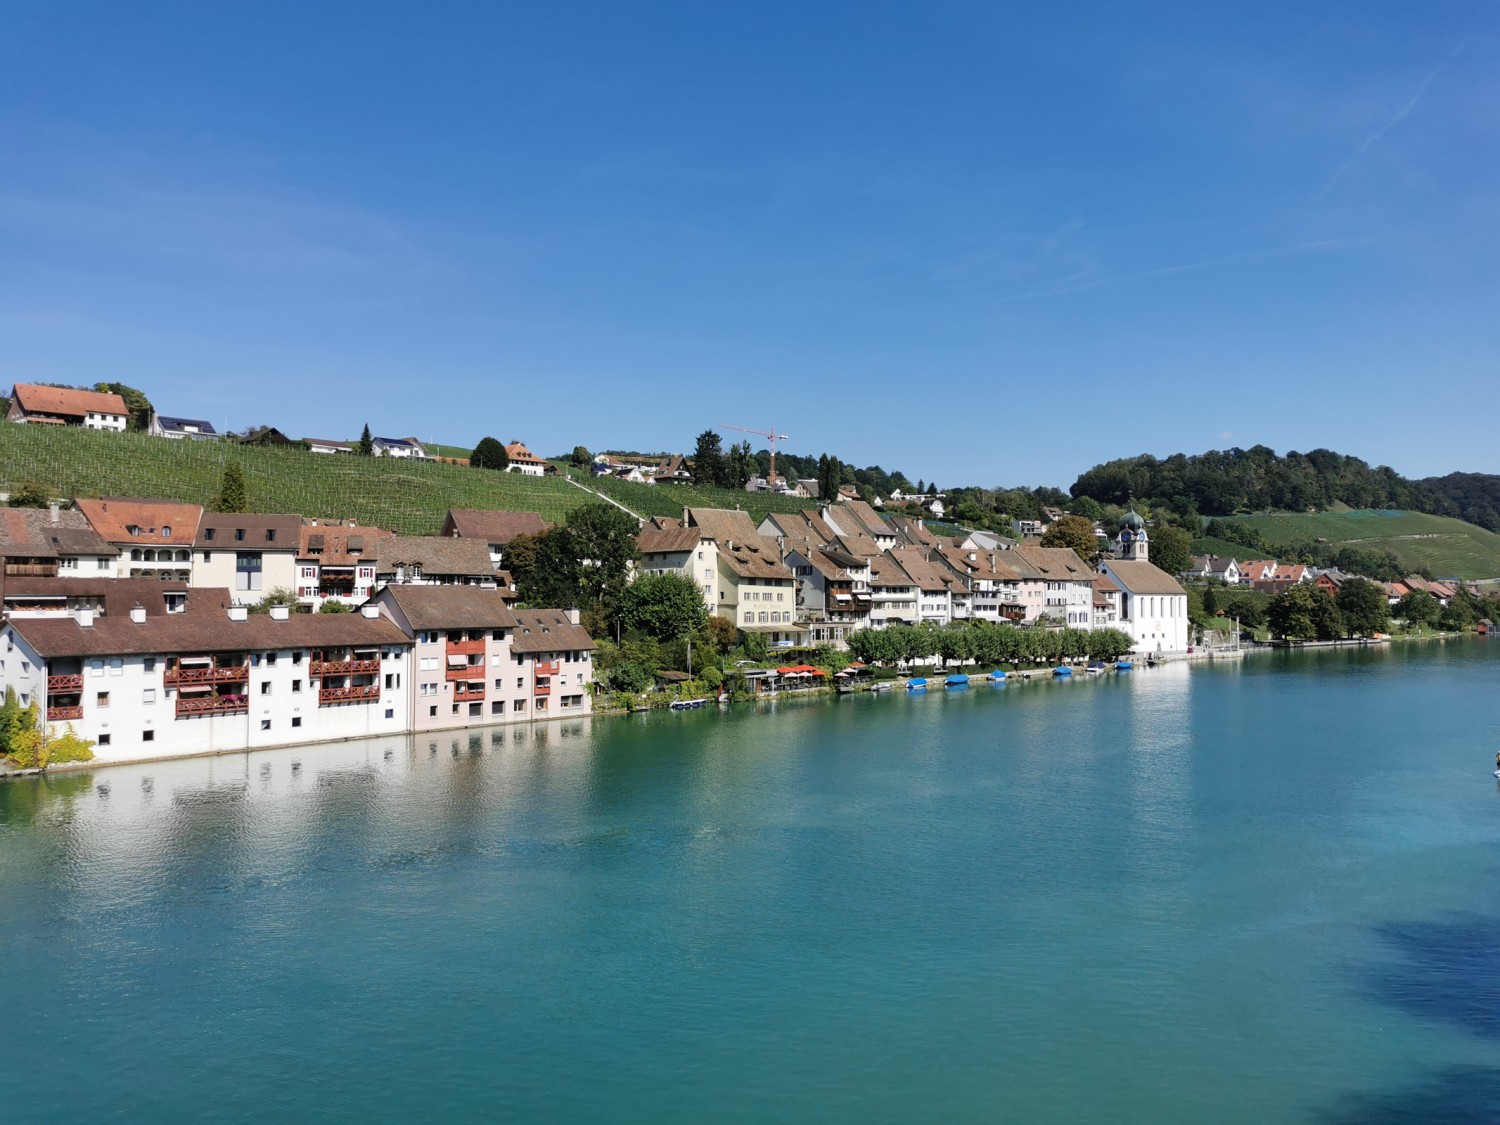 Eglisau, das Etappenziel dieser Wanderung, schmiegt sich an den Rhein. Bild: Andreas Staeger